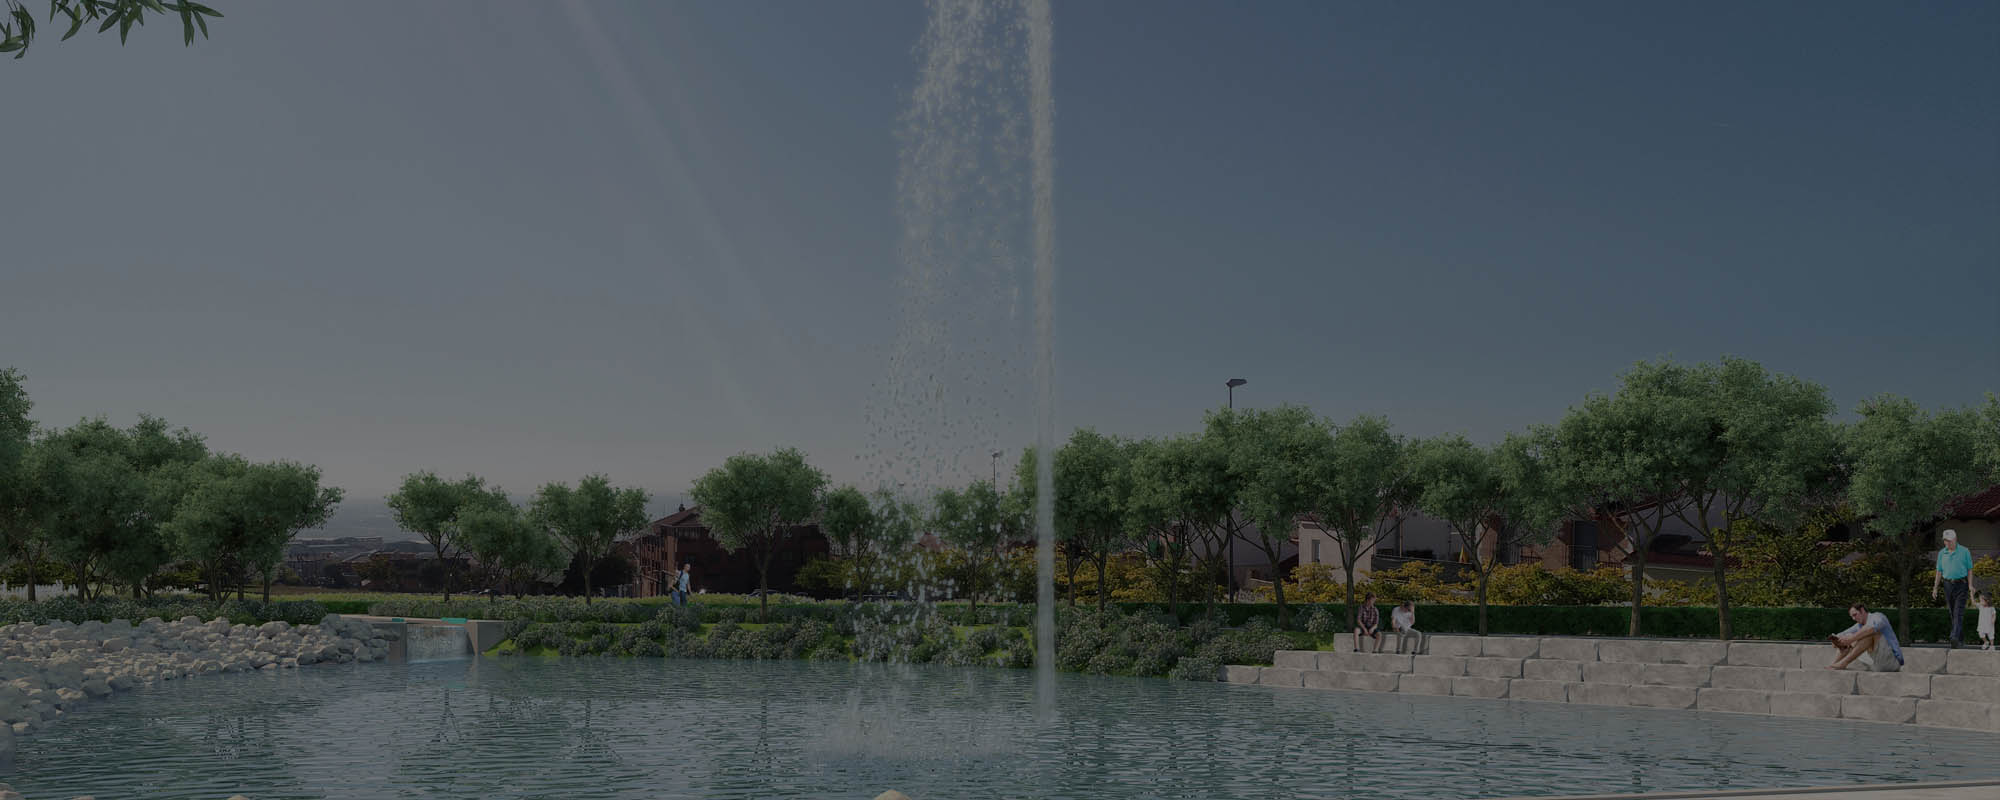 Vídeo visualización 3D Parque El Cerrillo en Colmenar Viejo, Madrid